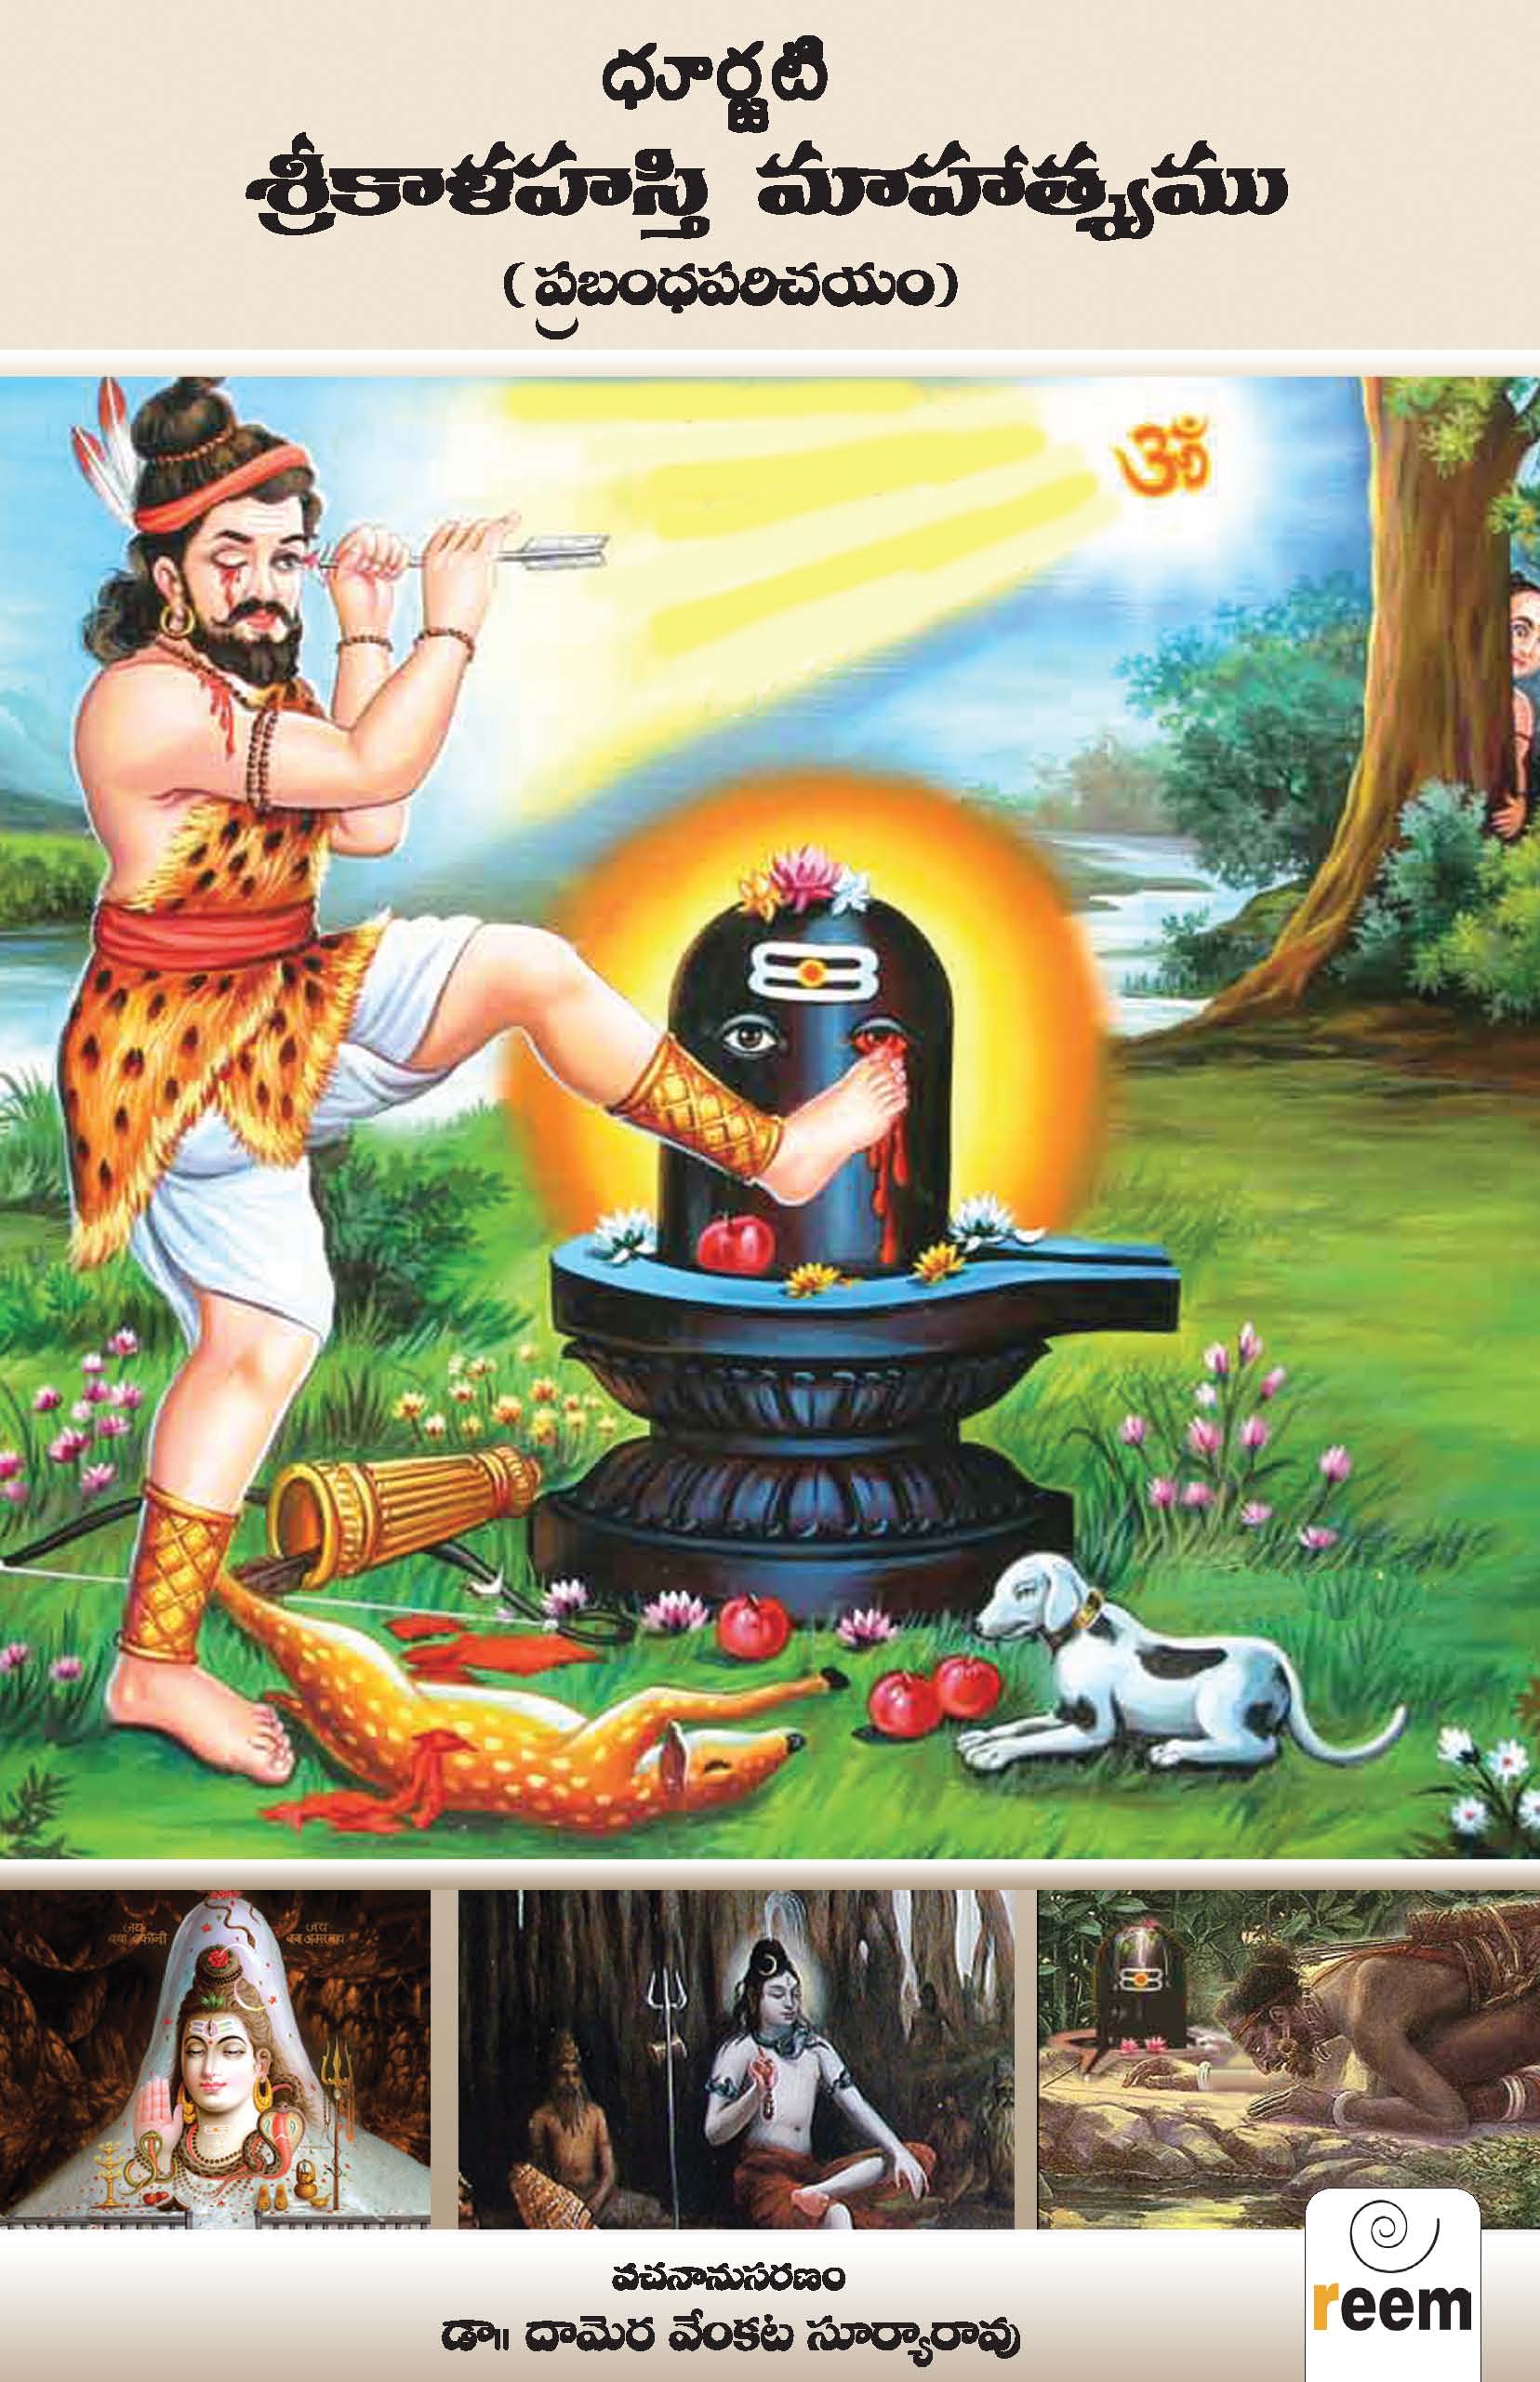 Sri Kalahasti Mahatsyam